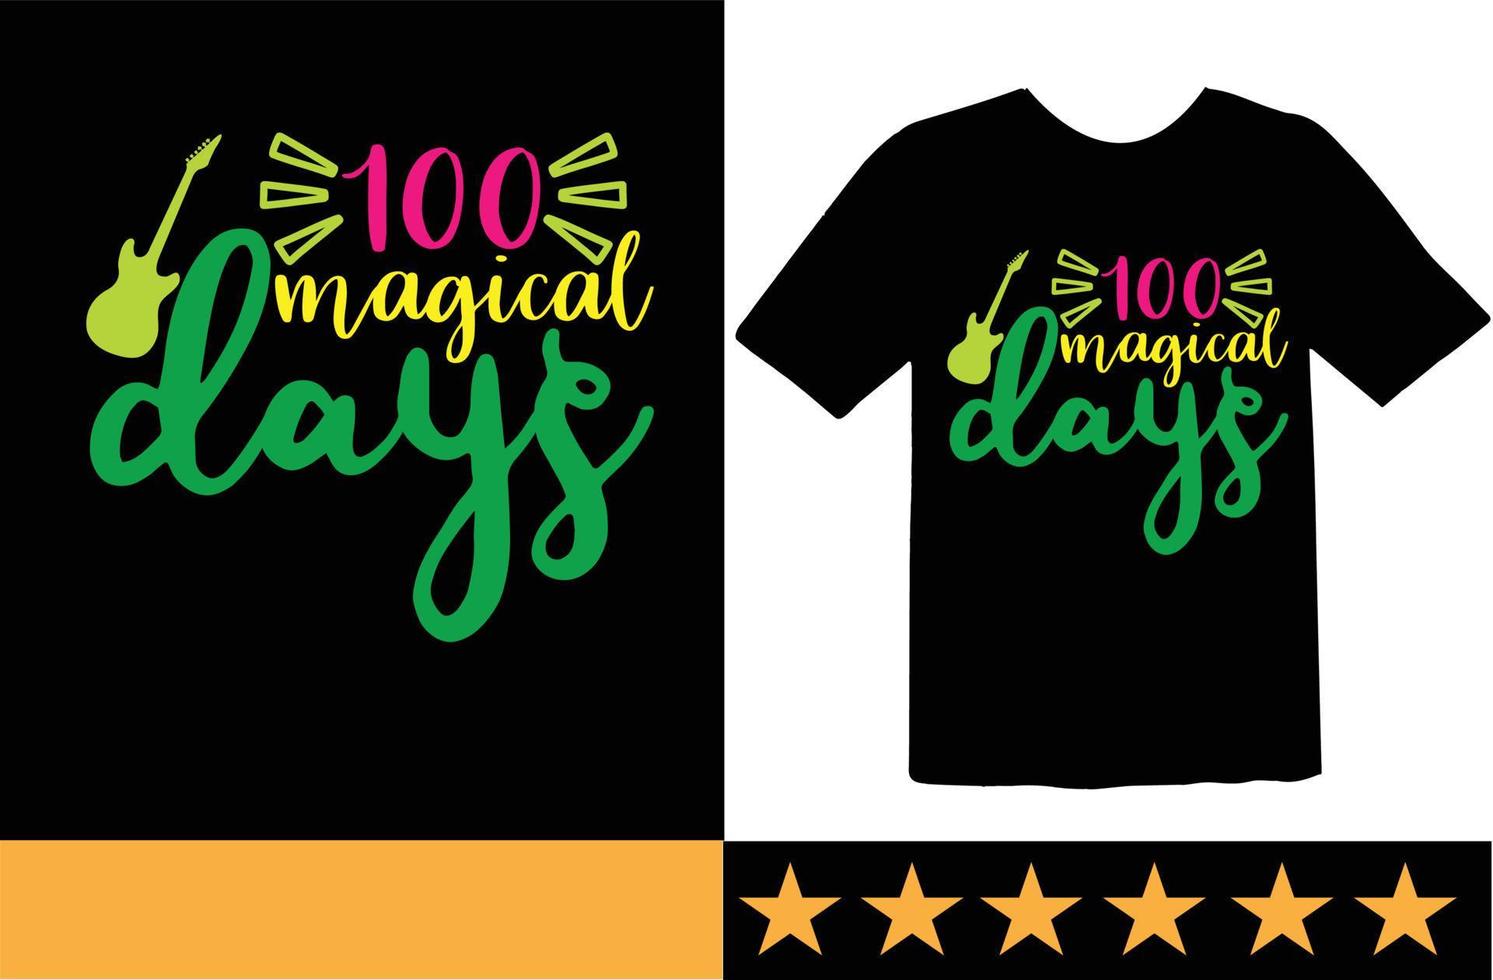 100 Tag von Schule svg t Hemd Design vektor